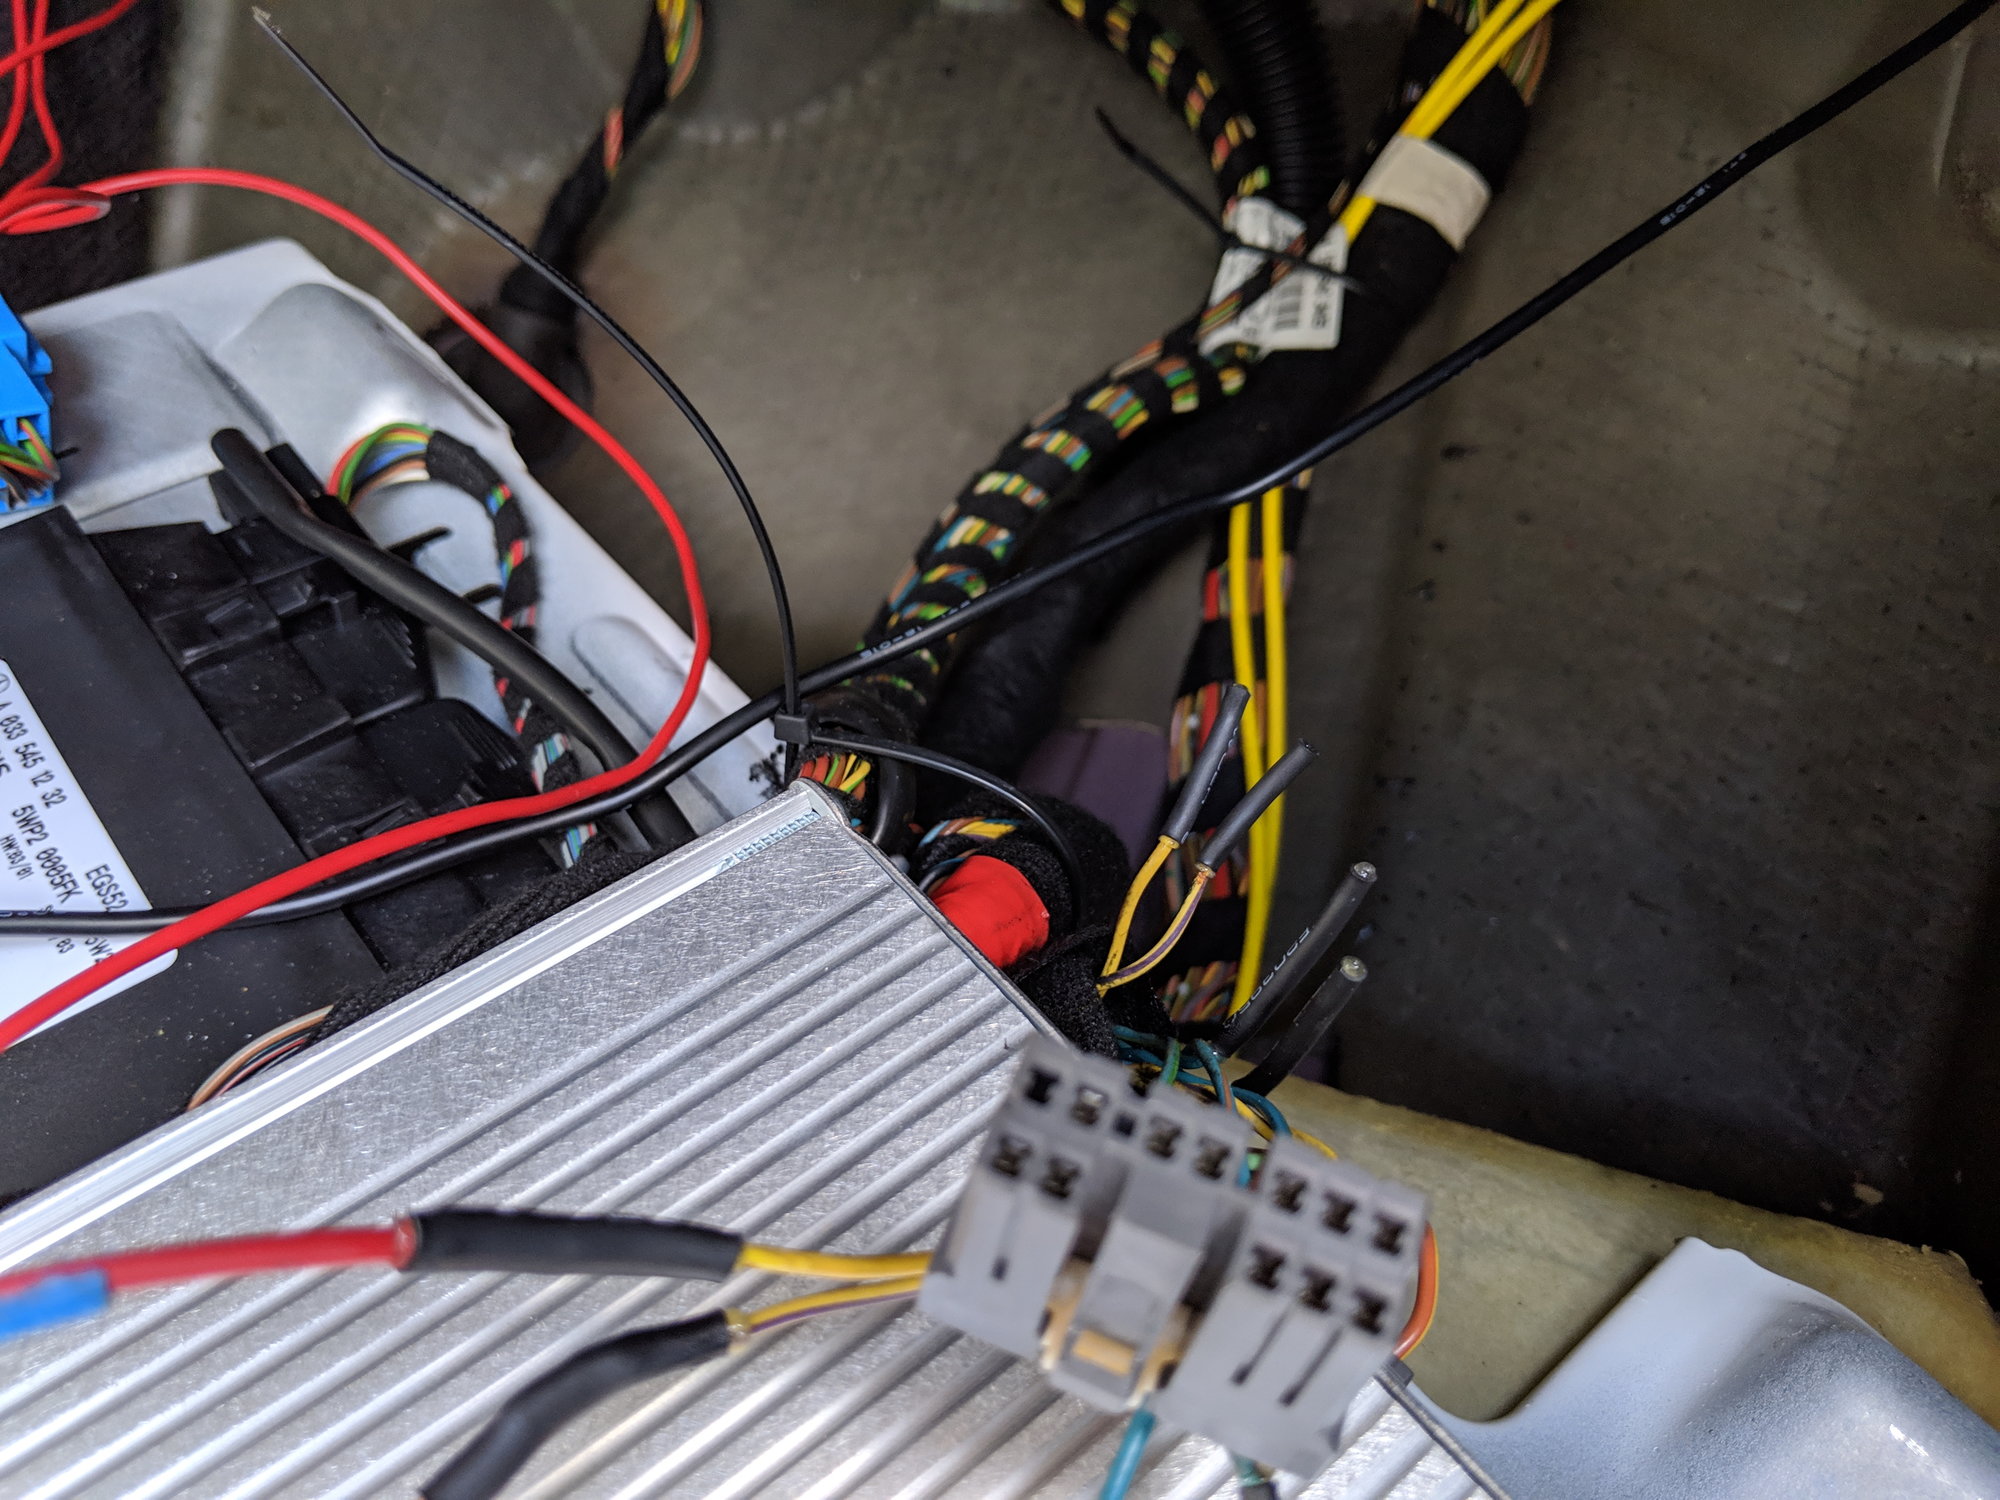 OEM radio wiring to Kenwood - CrossfireForum - The Chrysler Crossfire